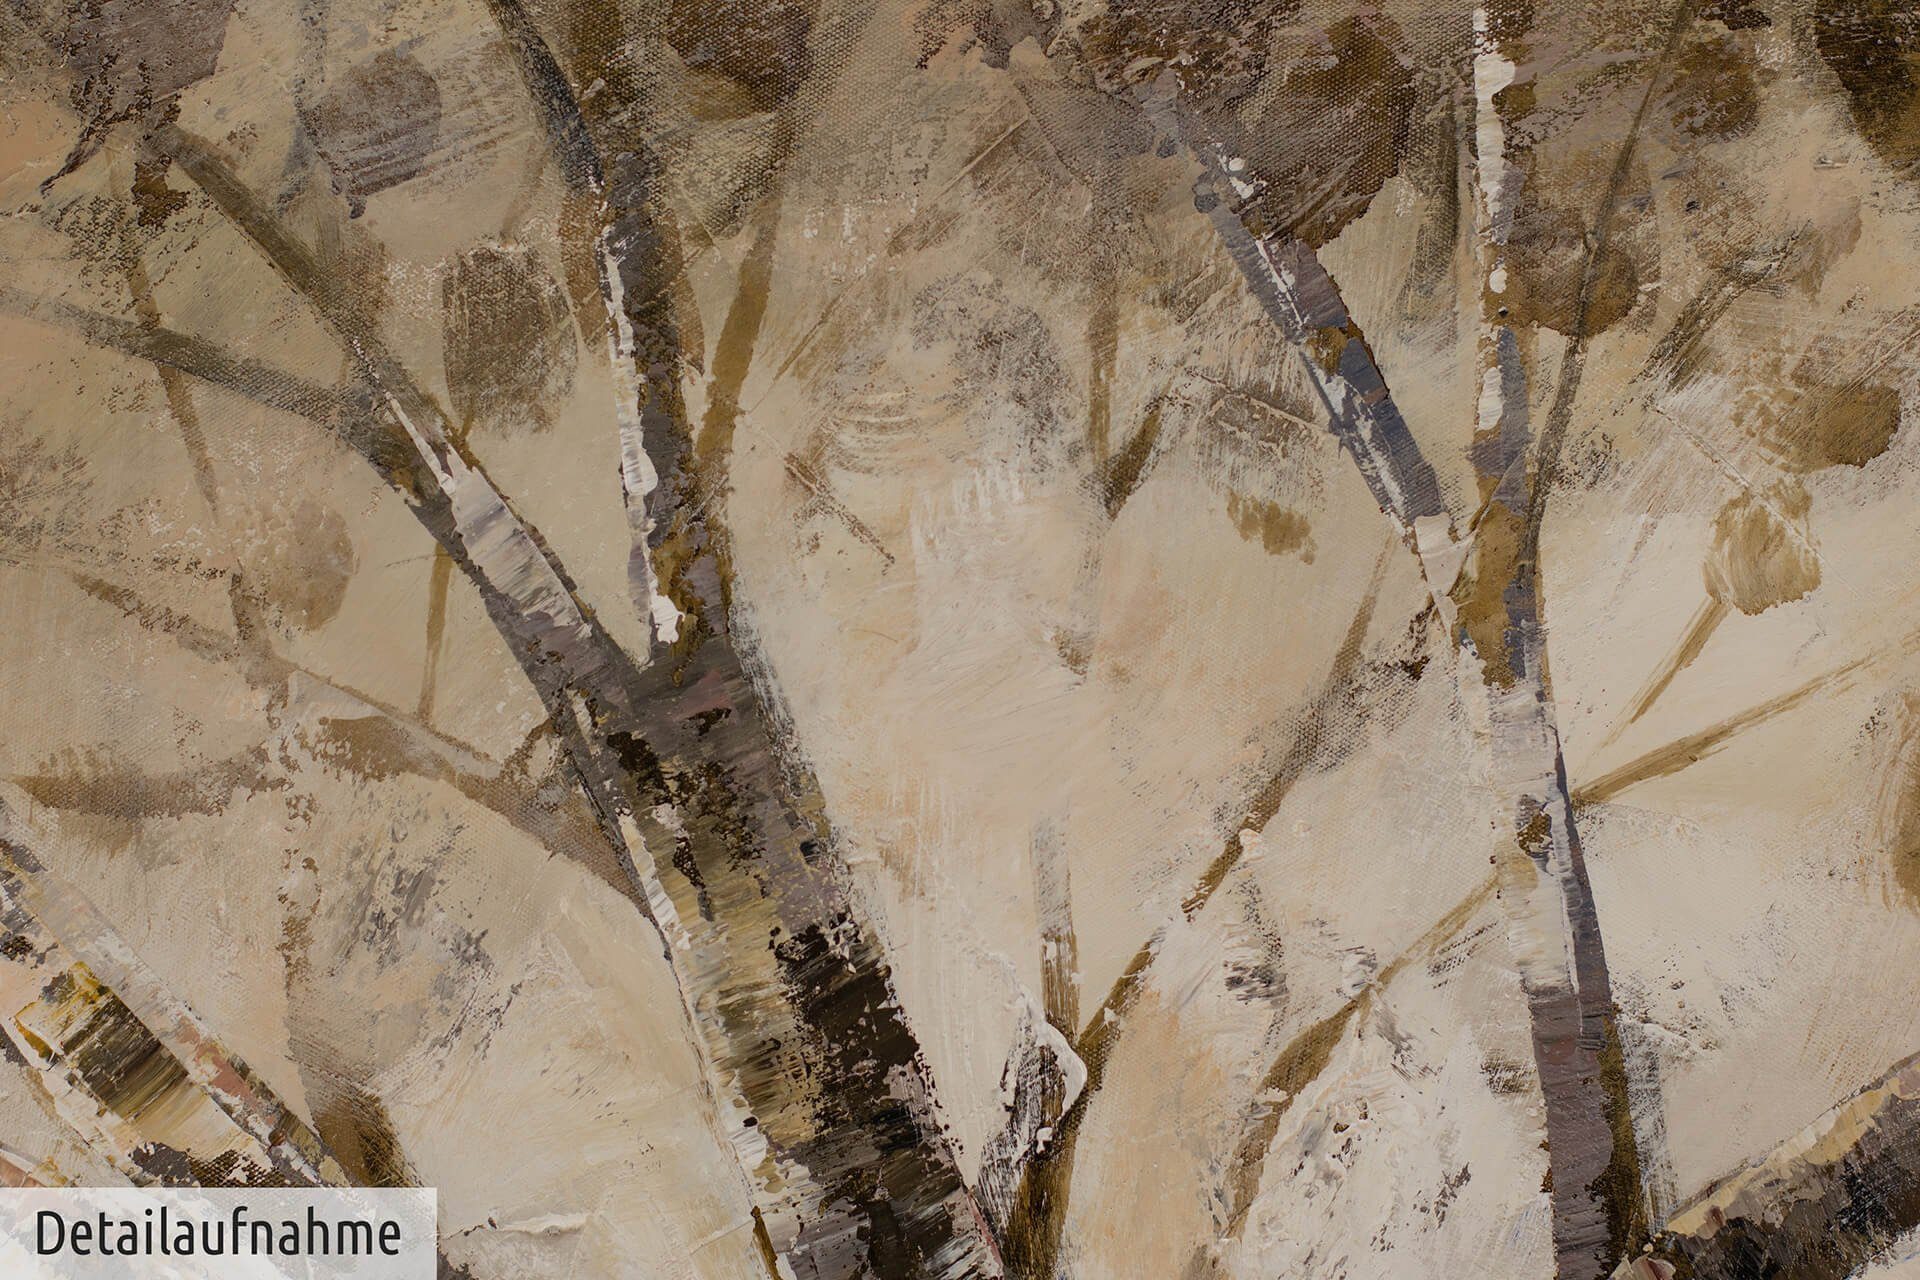 KUNSTLOFT Gemälde Der weise Baum 100% Wohnzimmer Wandbild Leinwandbild HANDGEMALT 120x60 cm